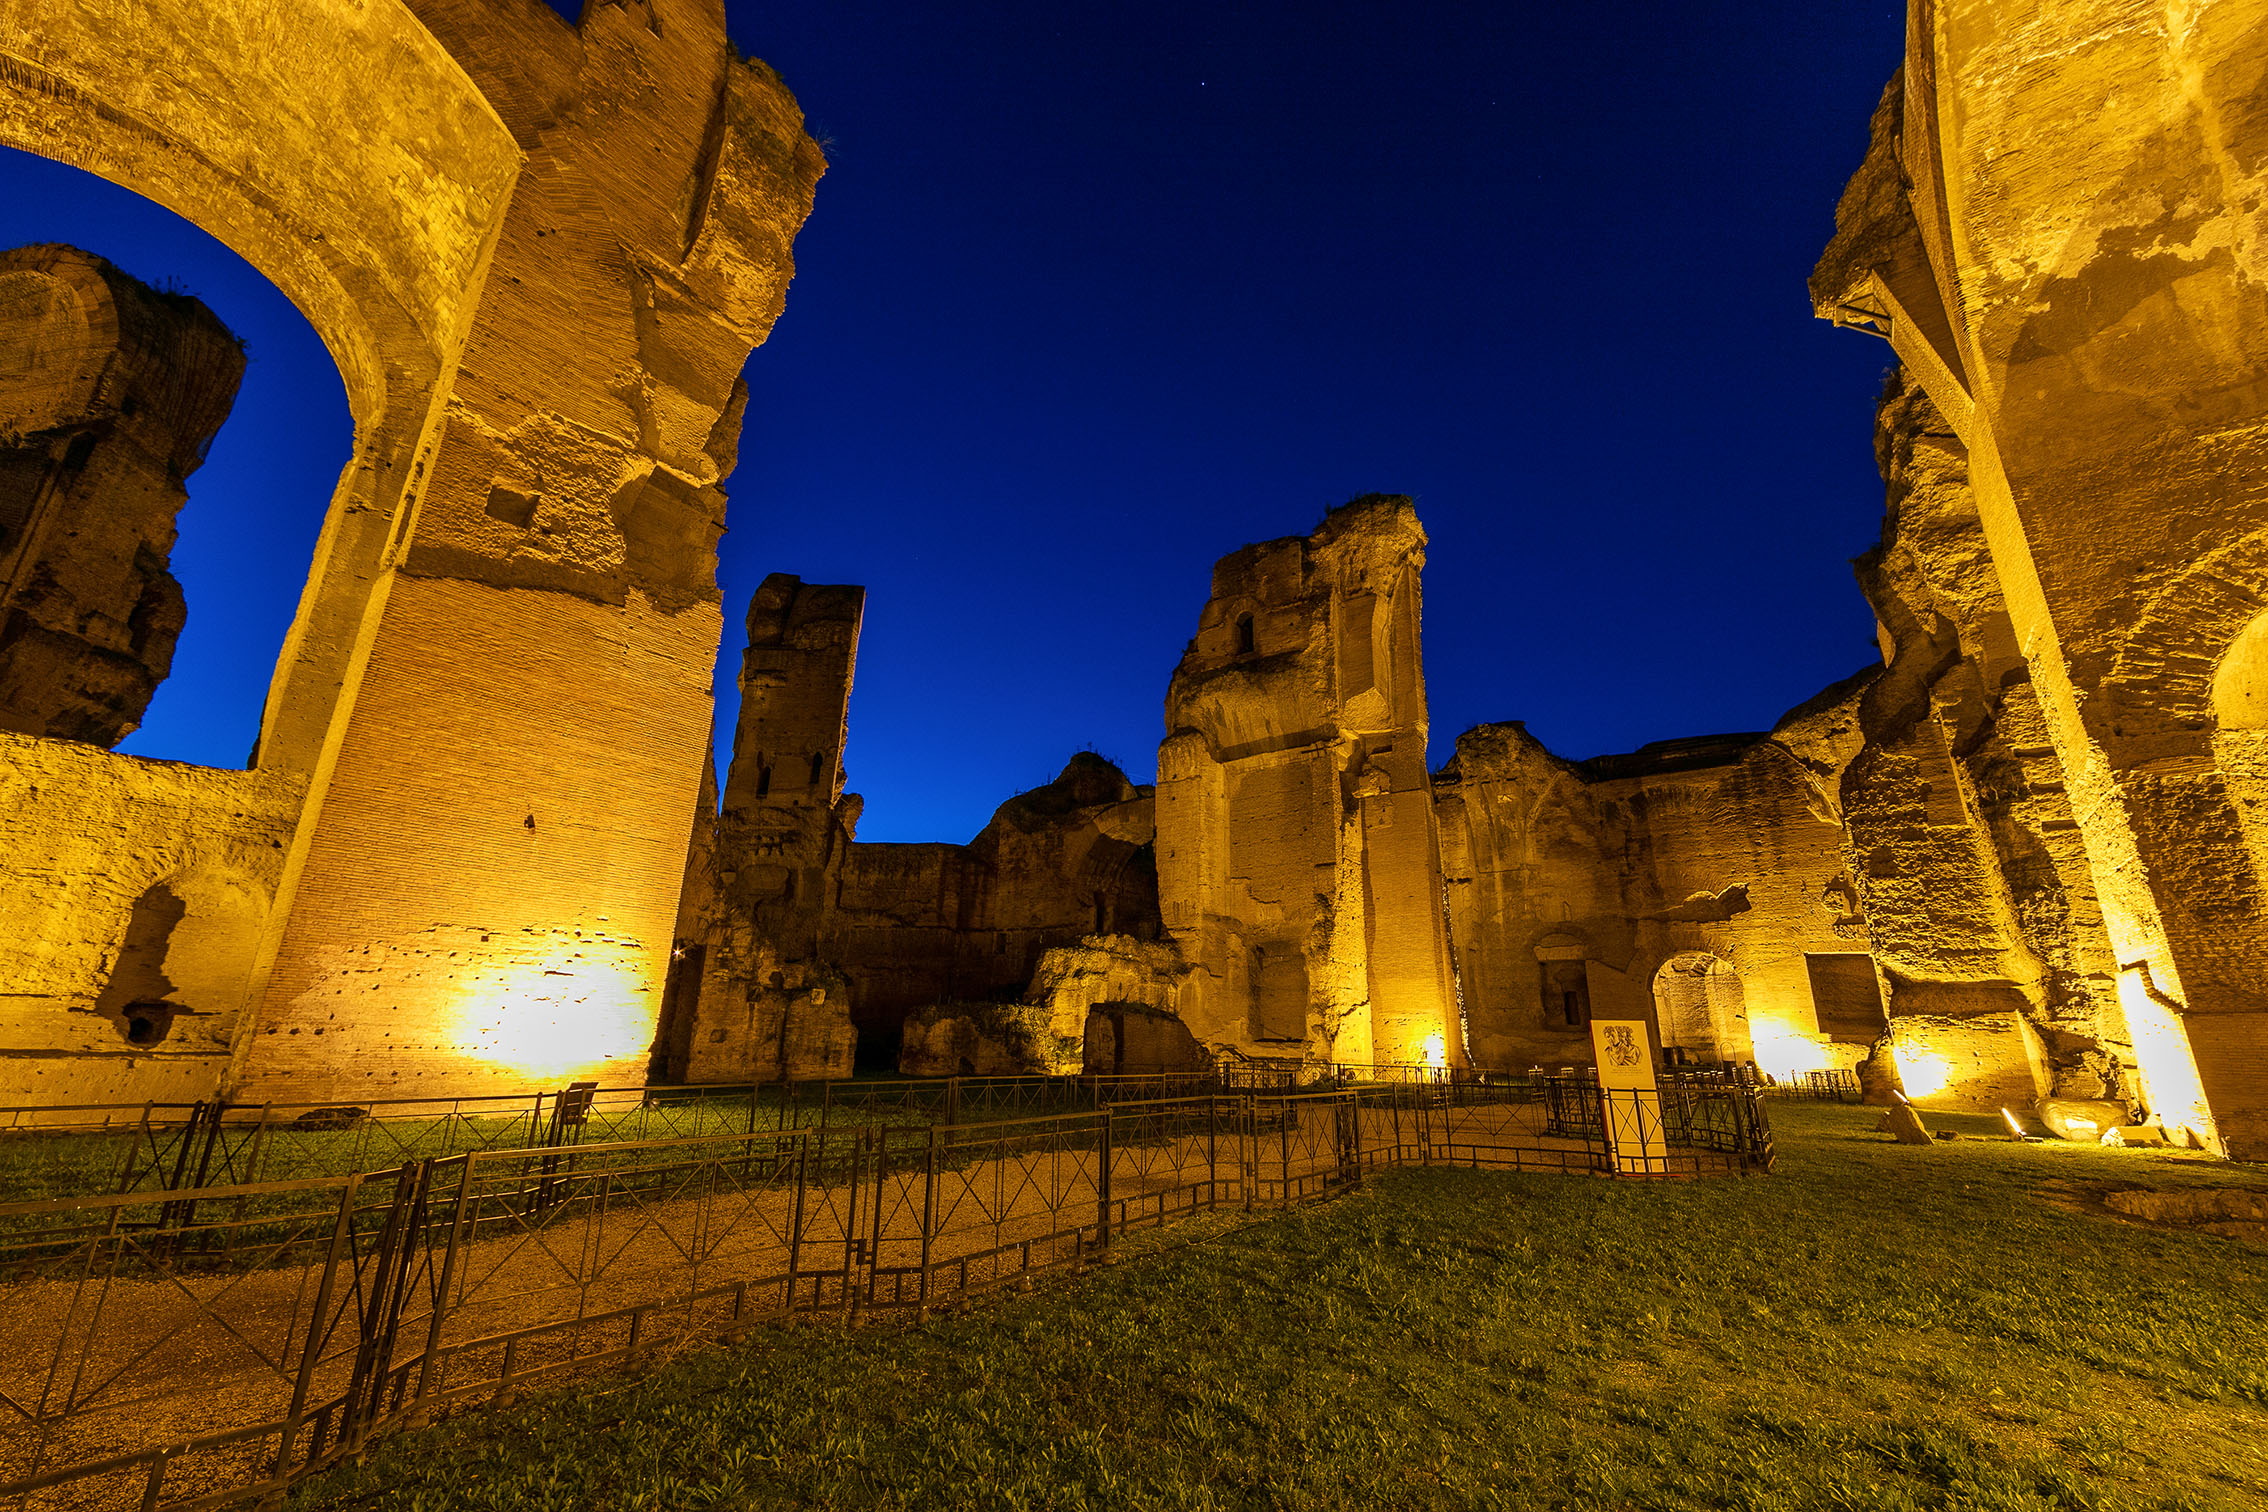 La notte splende alle Terme di Caracalla: visite serali a settembre 2022